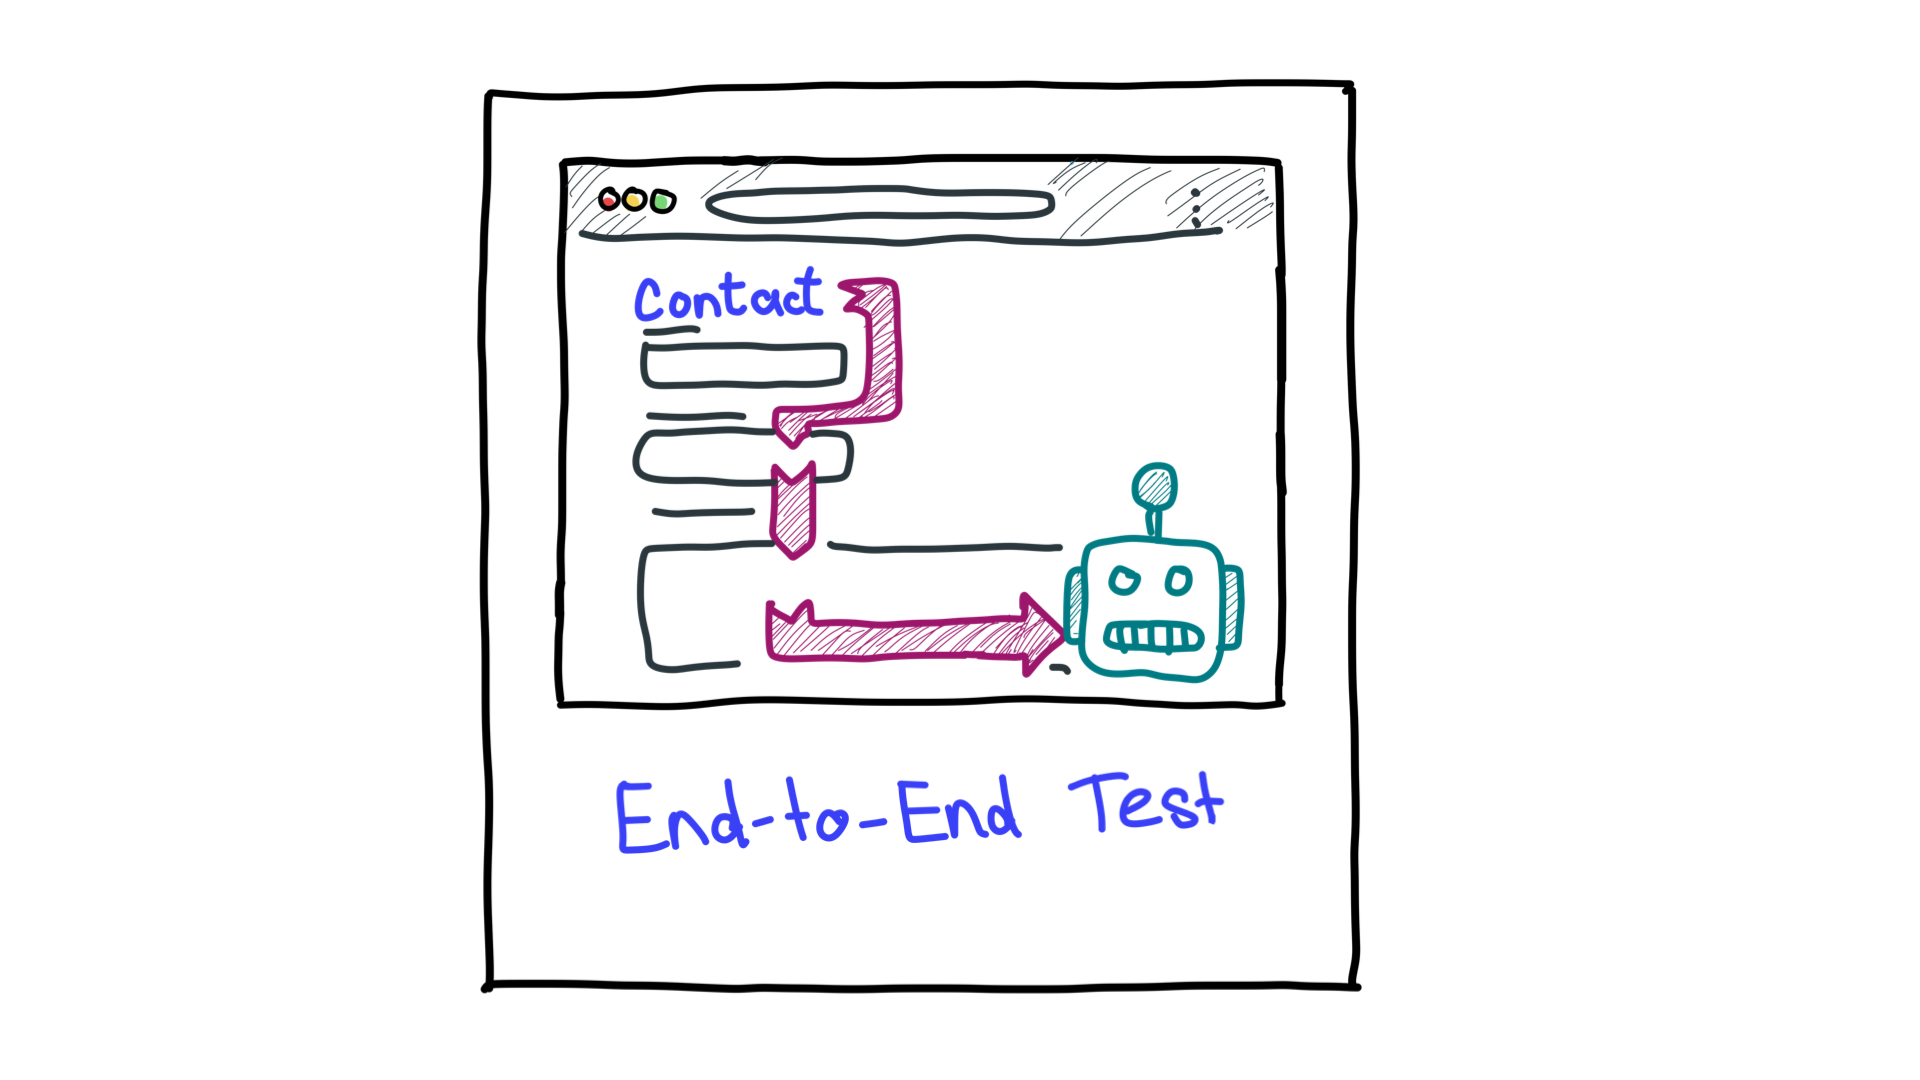 Una rappresentazione semplificata di test end-to-end che mostrano un computer come un robot e un flusso di lavoro.